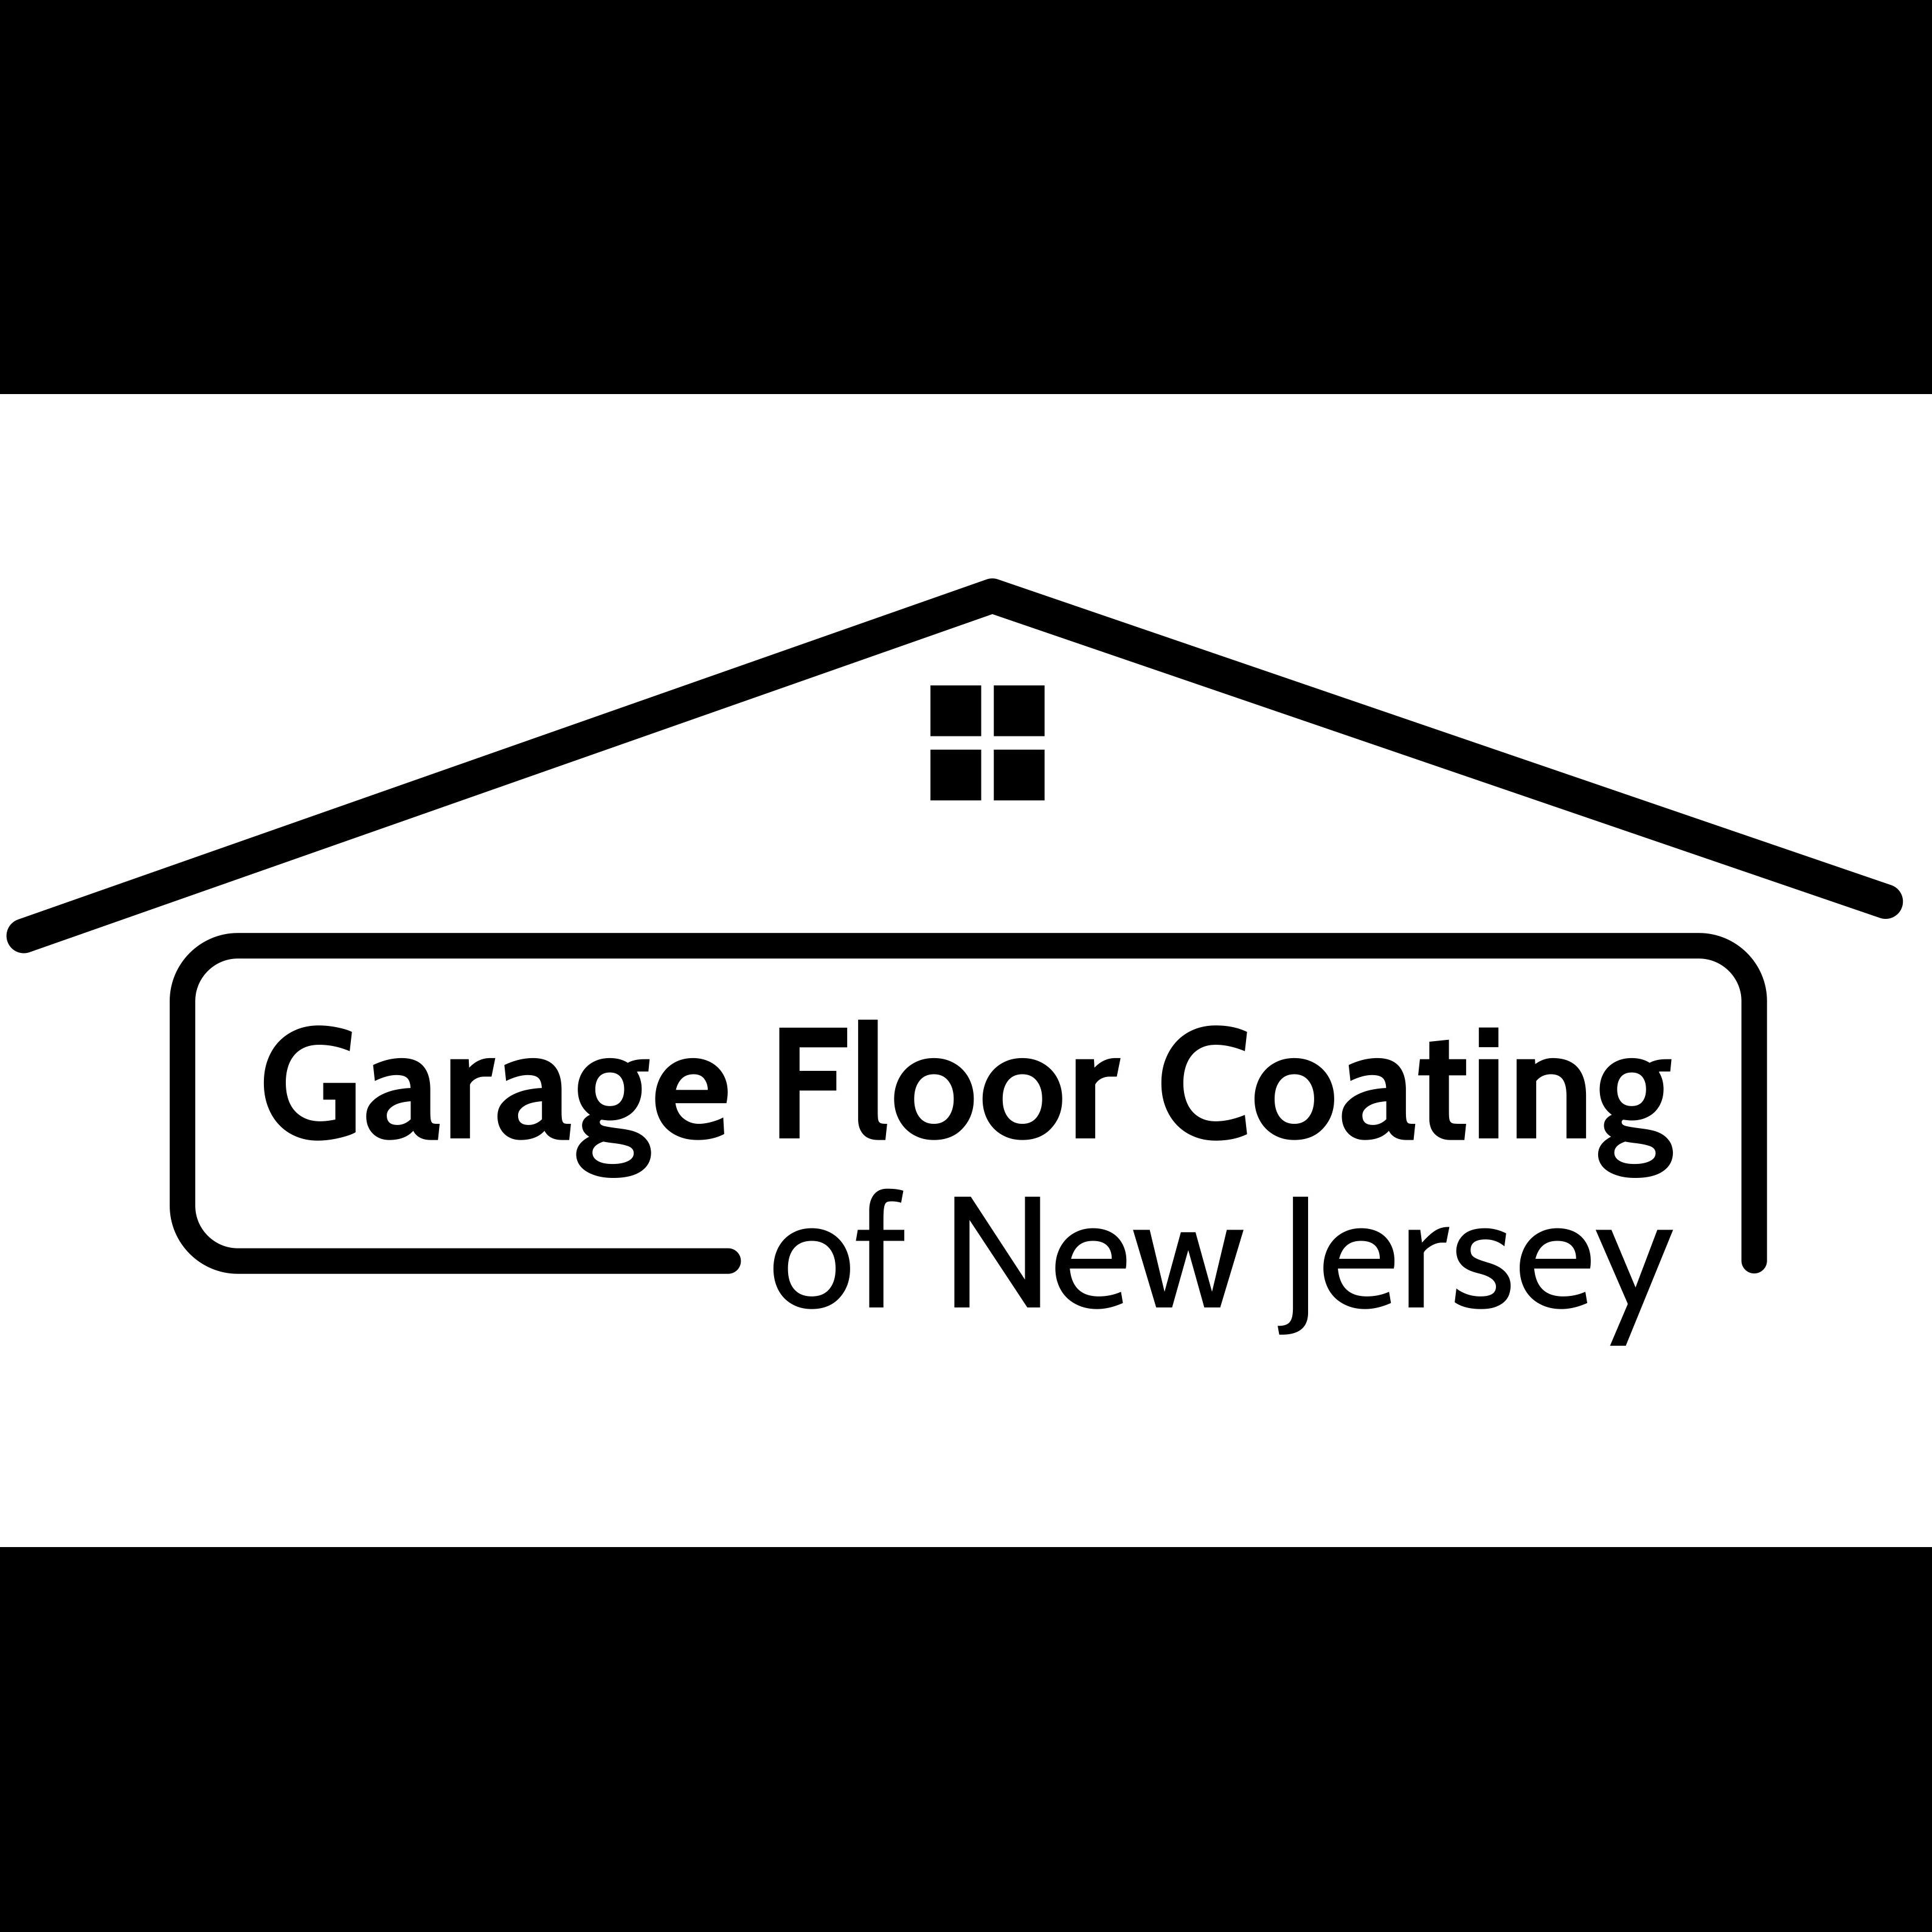 Garage Floor Coating of New Jersey Logo